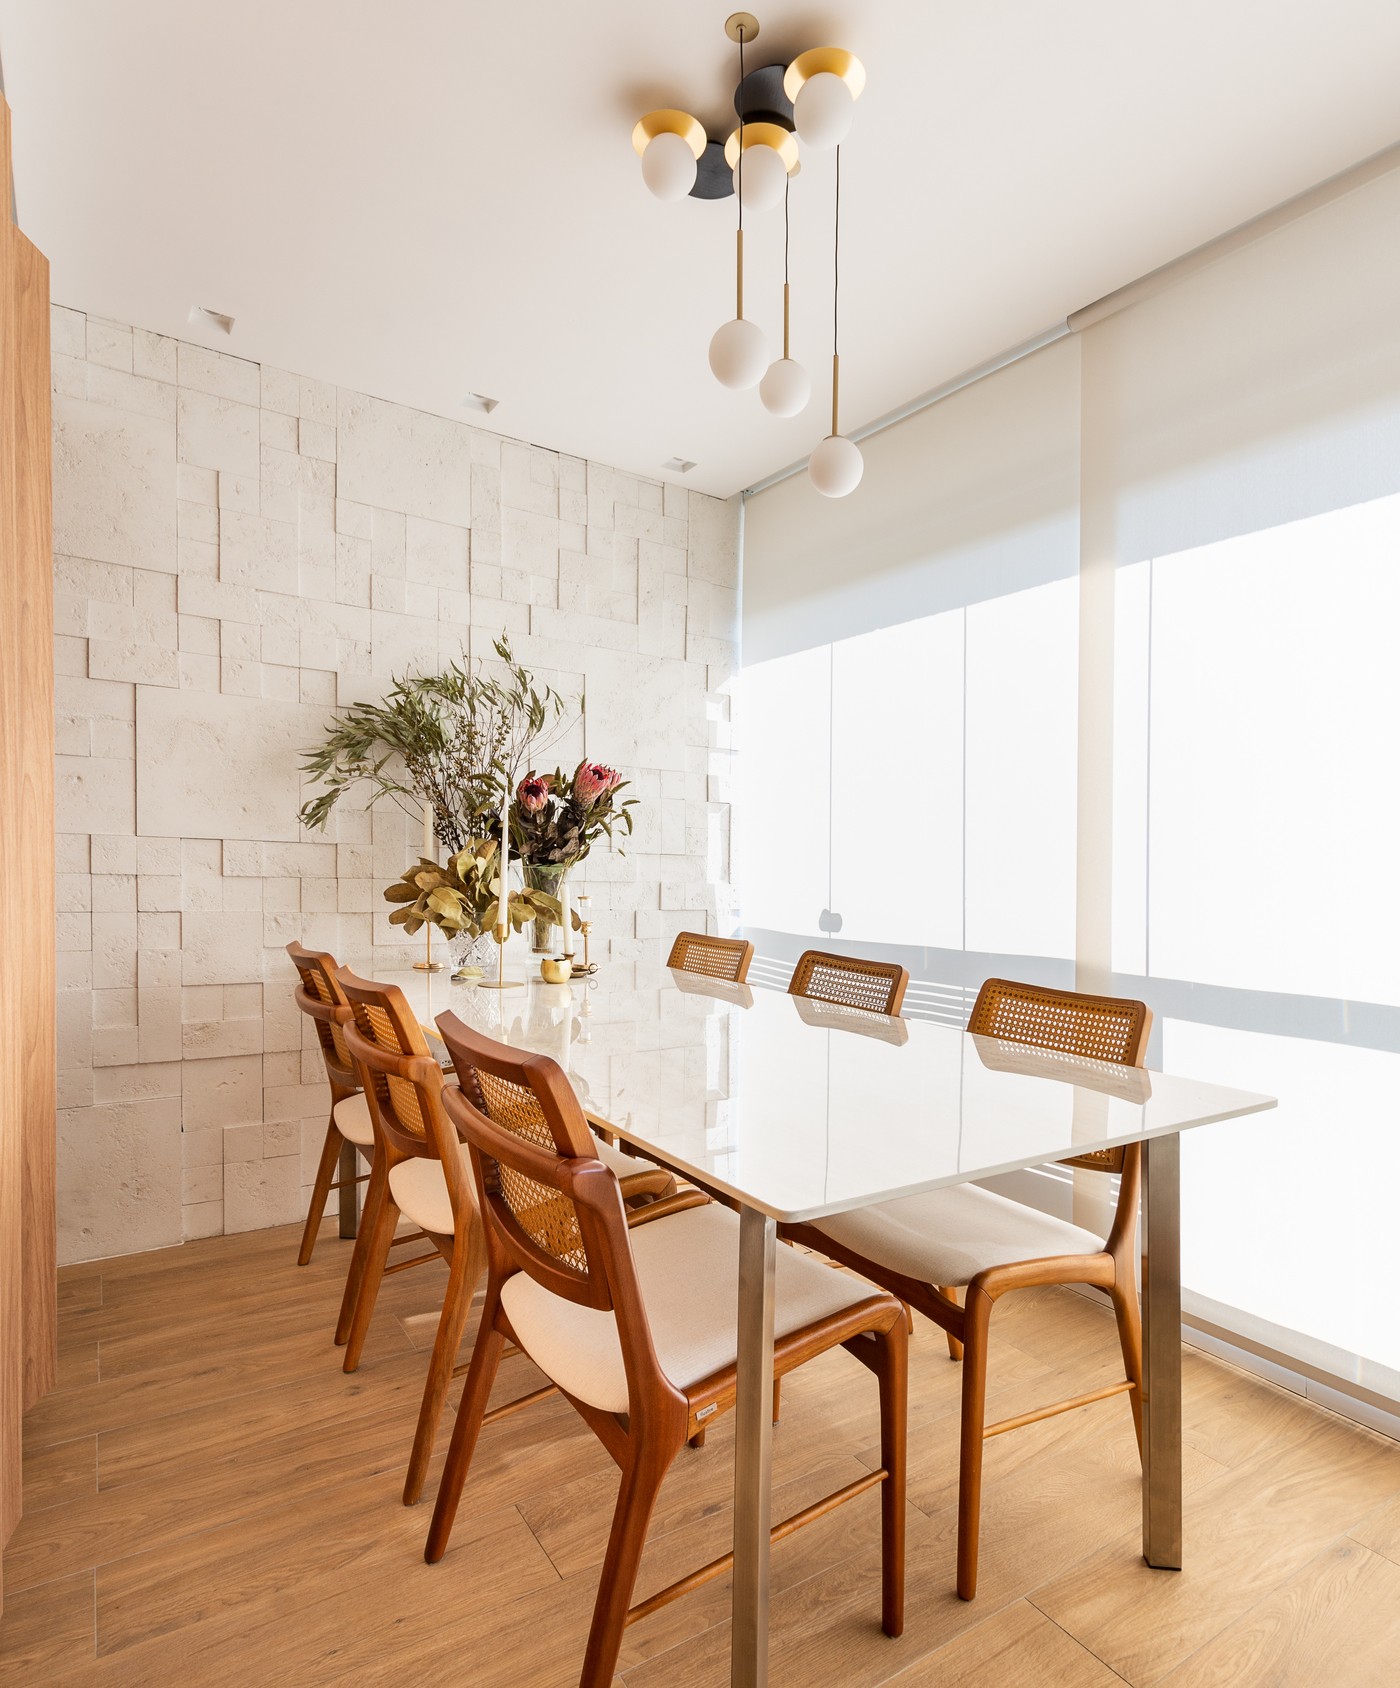 Décor do dia: living integrado à cozinha tem painel ripado e jardim vertical (Foto: Luiz Franco)